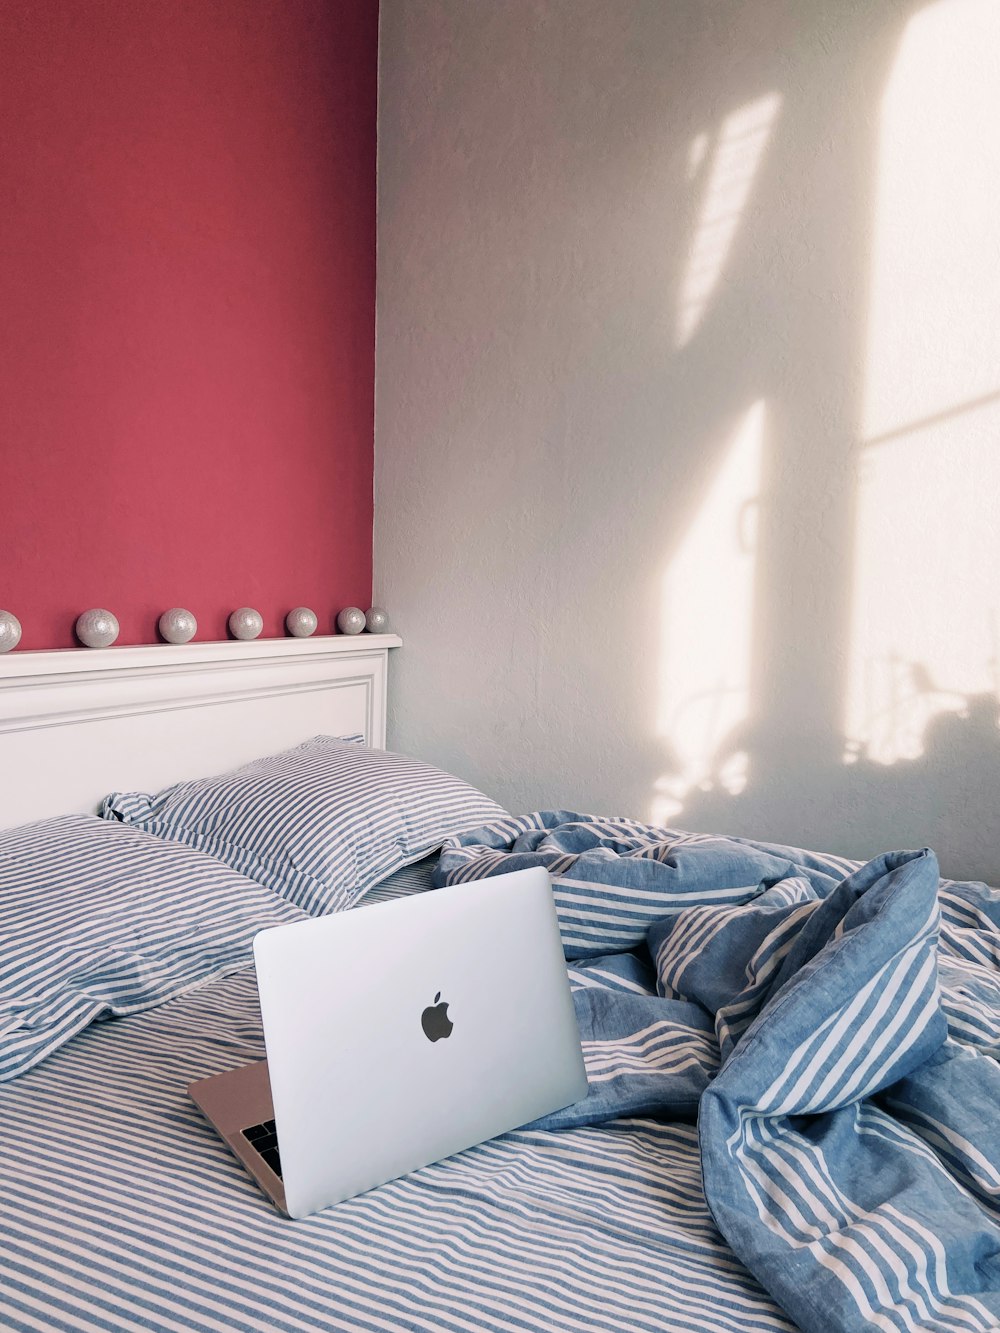 MacBook plateado sobre ropa de cama azul y blanca